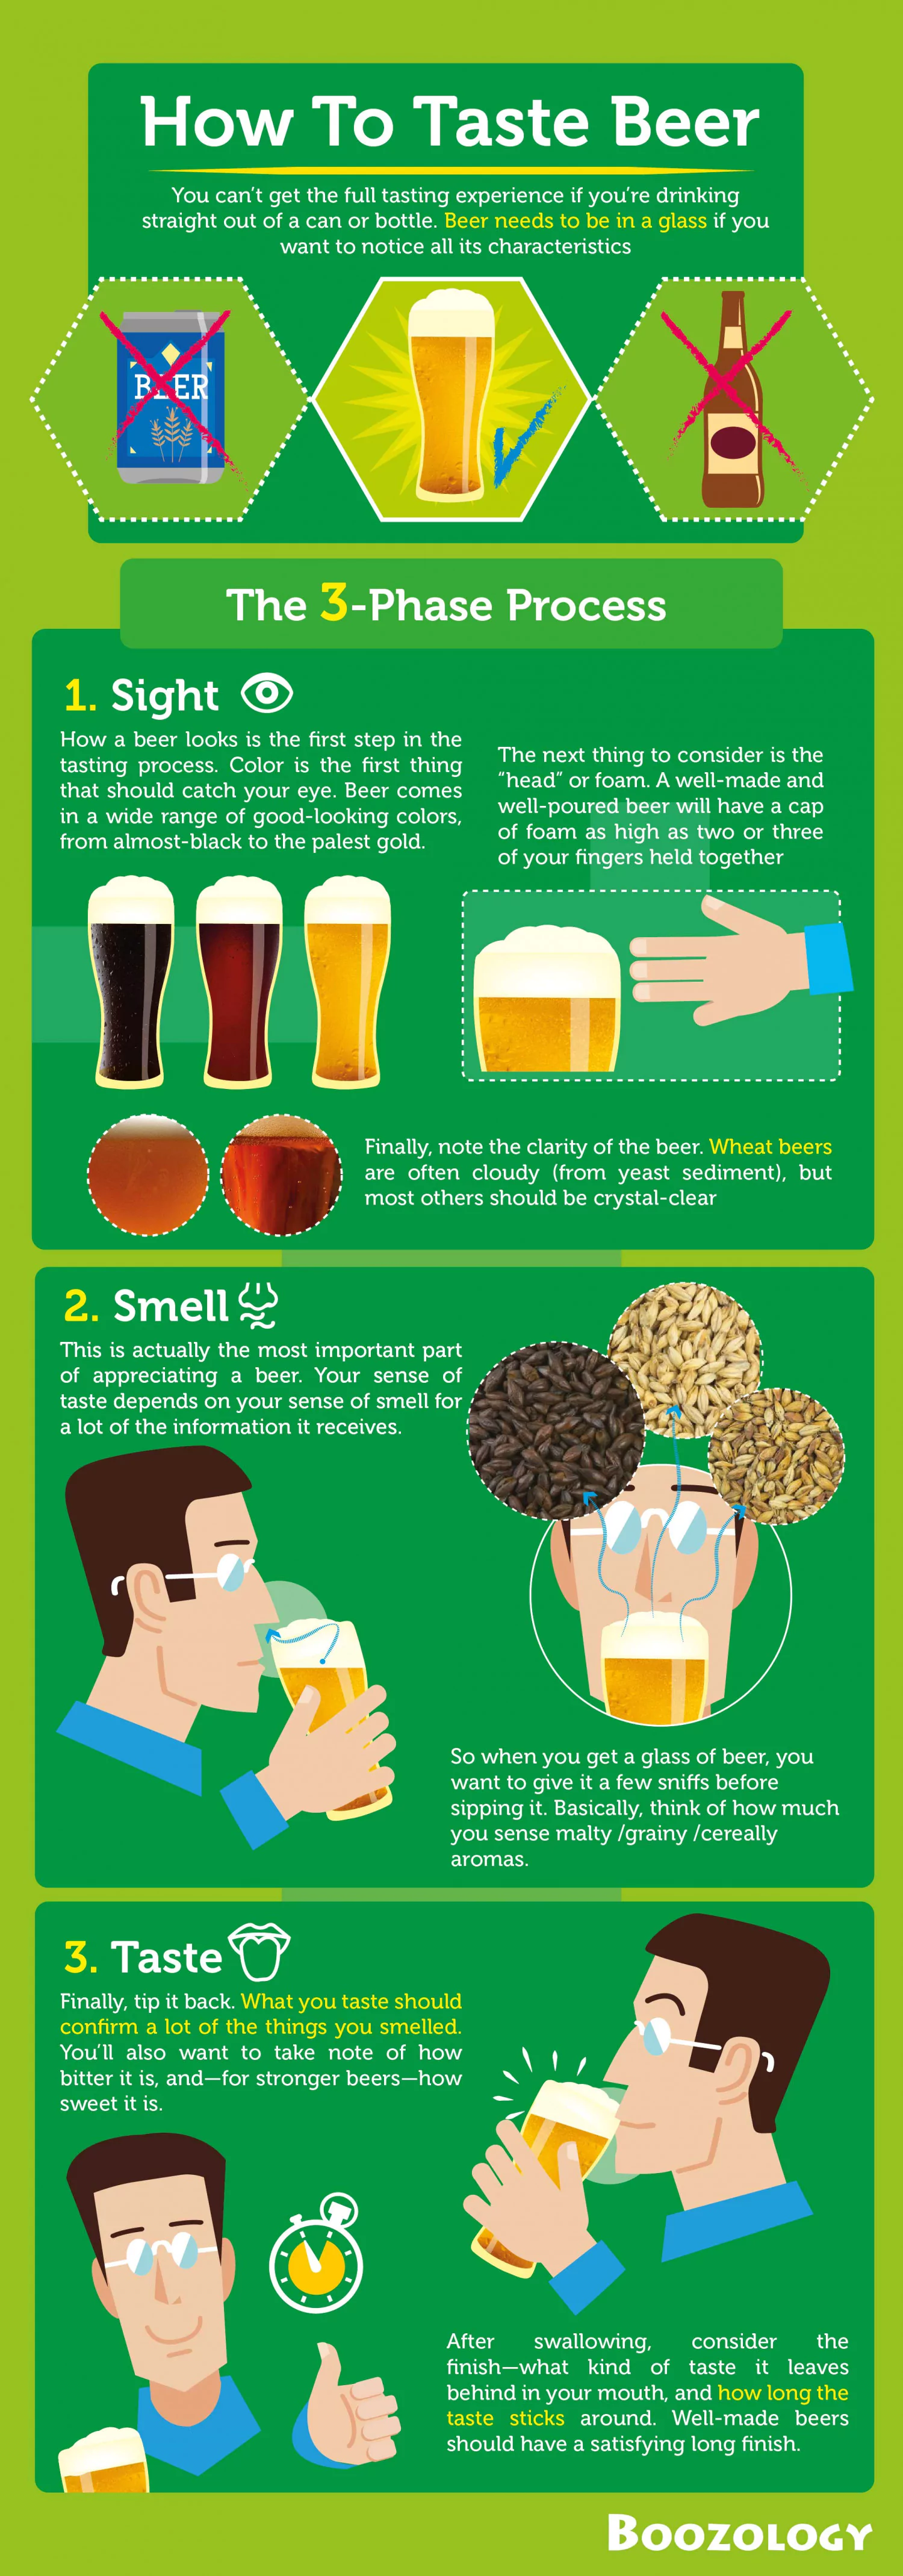 How to Taste Beer